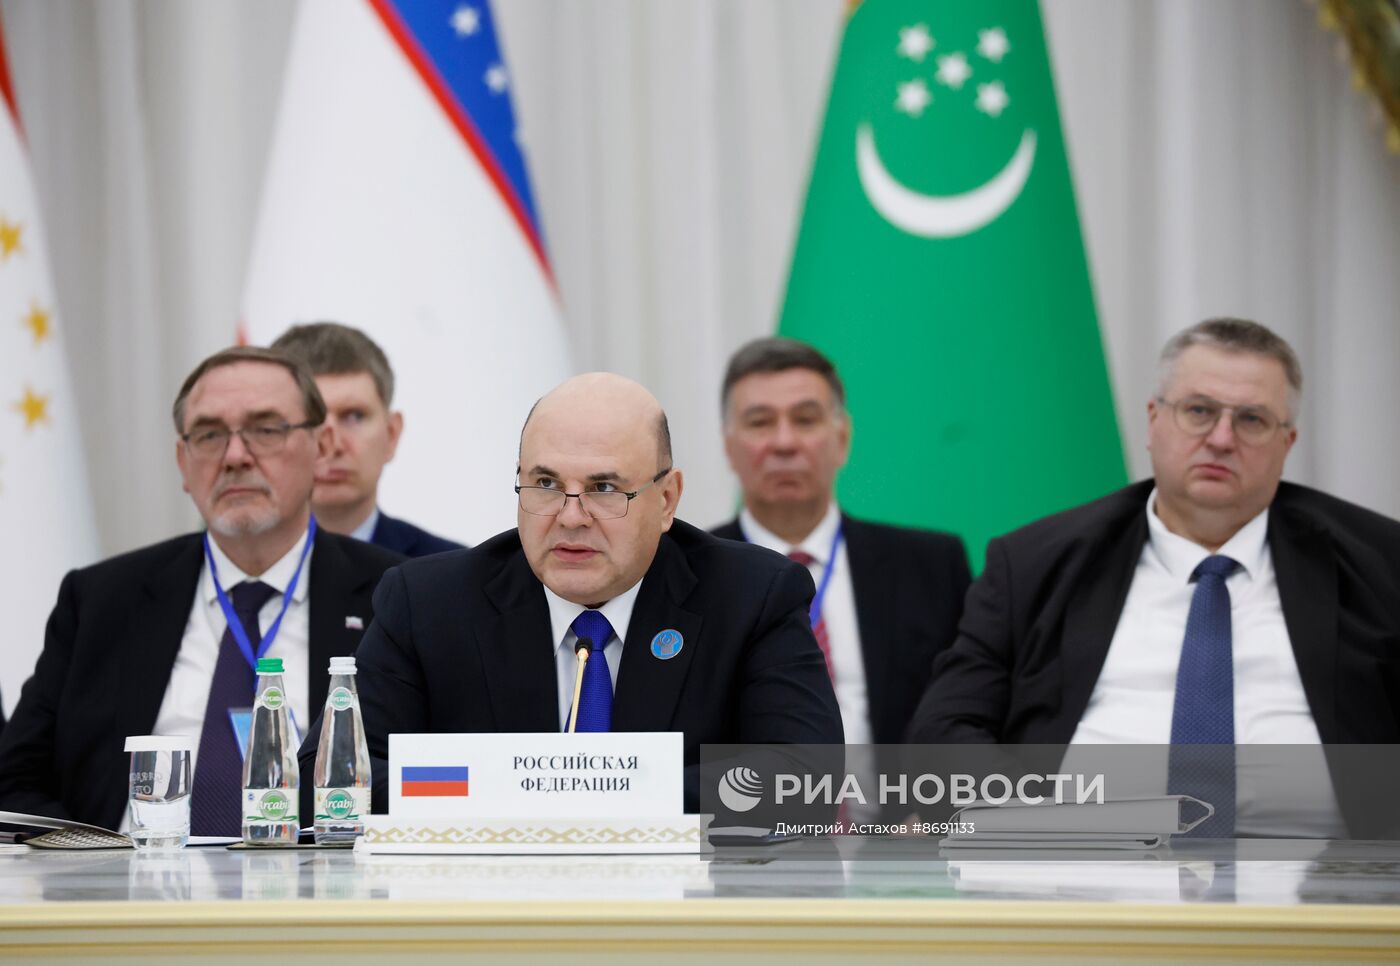 Визит премьер-министра РФ М. Мишустина в Туркменистан